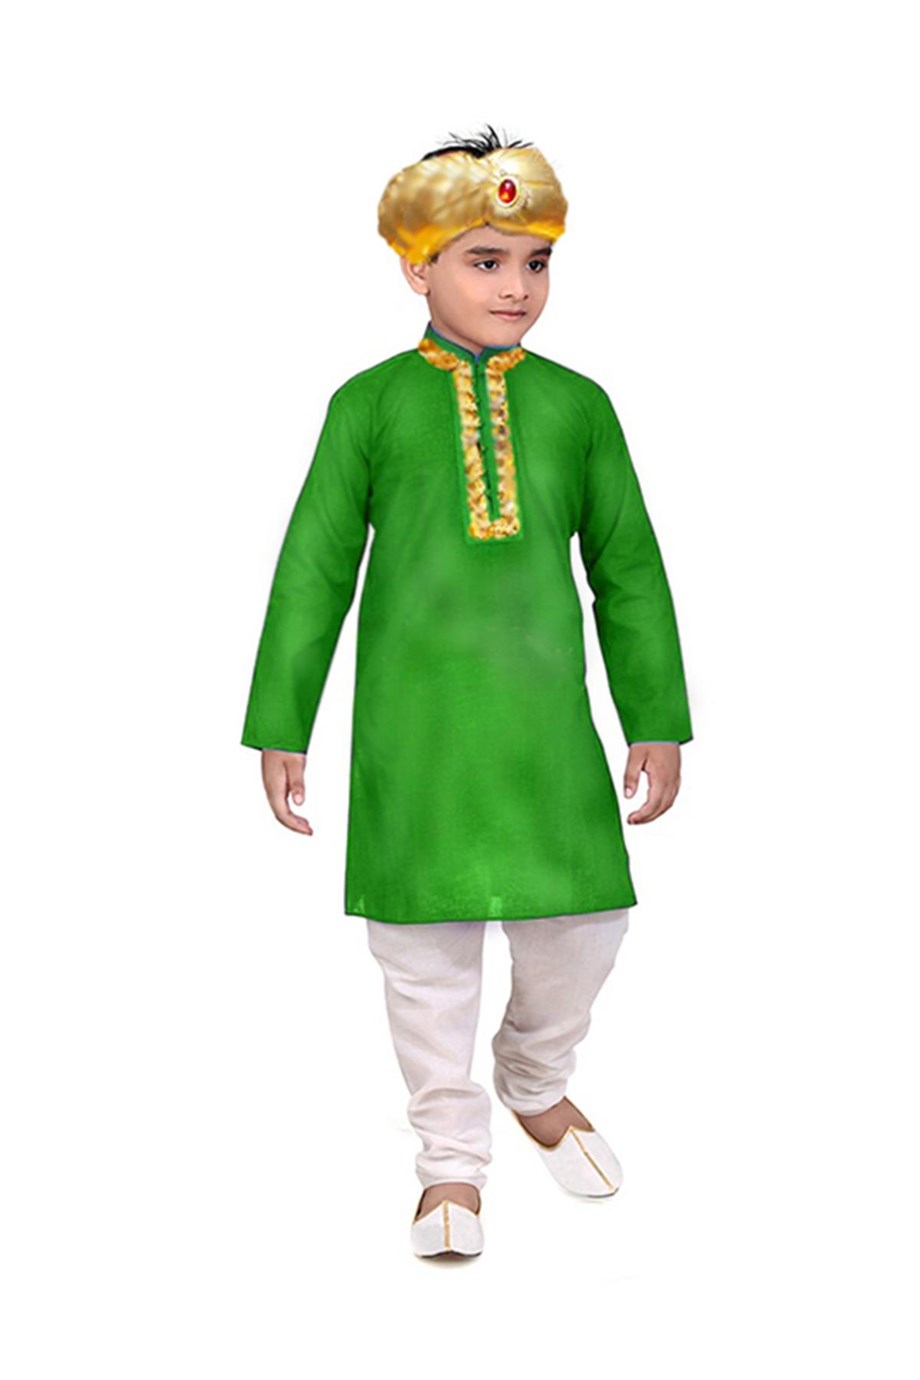 Hindistanlı Erkek Çocuk Kostümü UK-26 | masalkostum.com